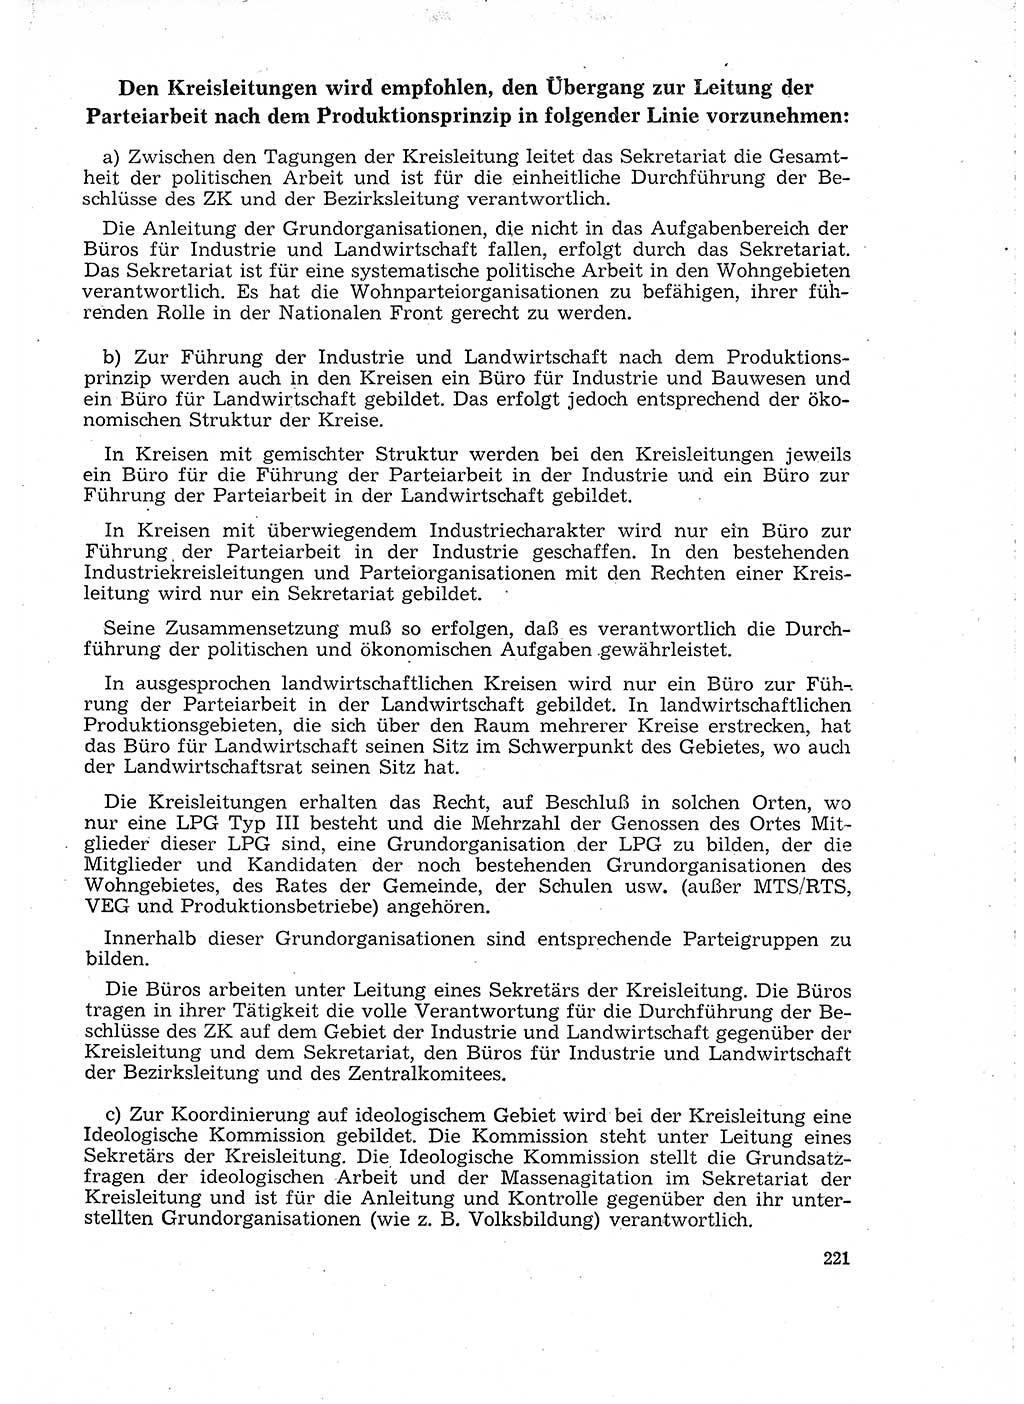 Neuer Weg (NW), Organ des Zentralkomitees (ZK) der SED (Sozialistische Einheitspartei Deutschlands) für Fragen des Parteilebens, 18. Jahrgang [Deutsche Demokratische Republik (DDR)] 1963, Seite 221 (NW ZK SED DDR 1963, S. 221)